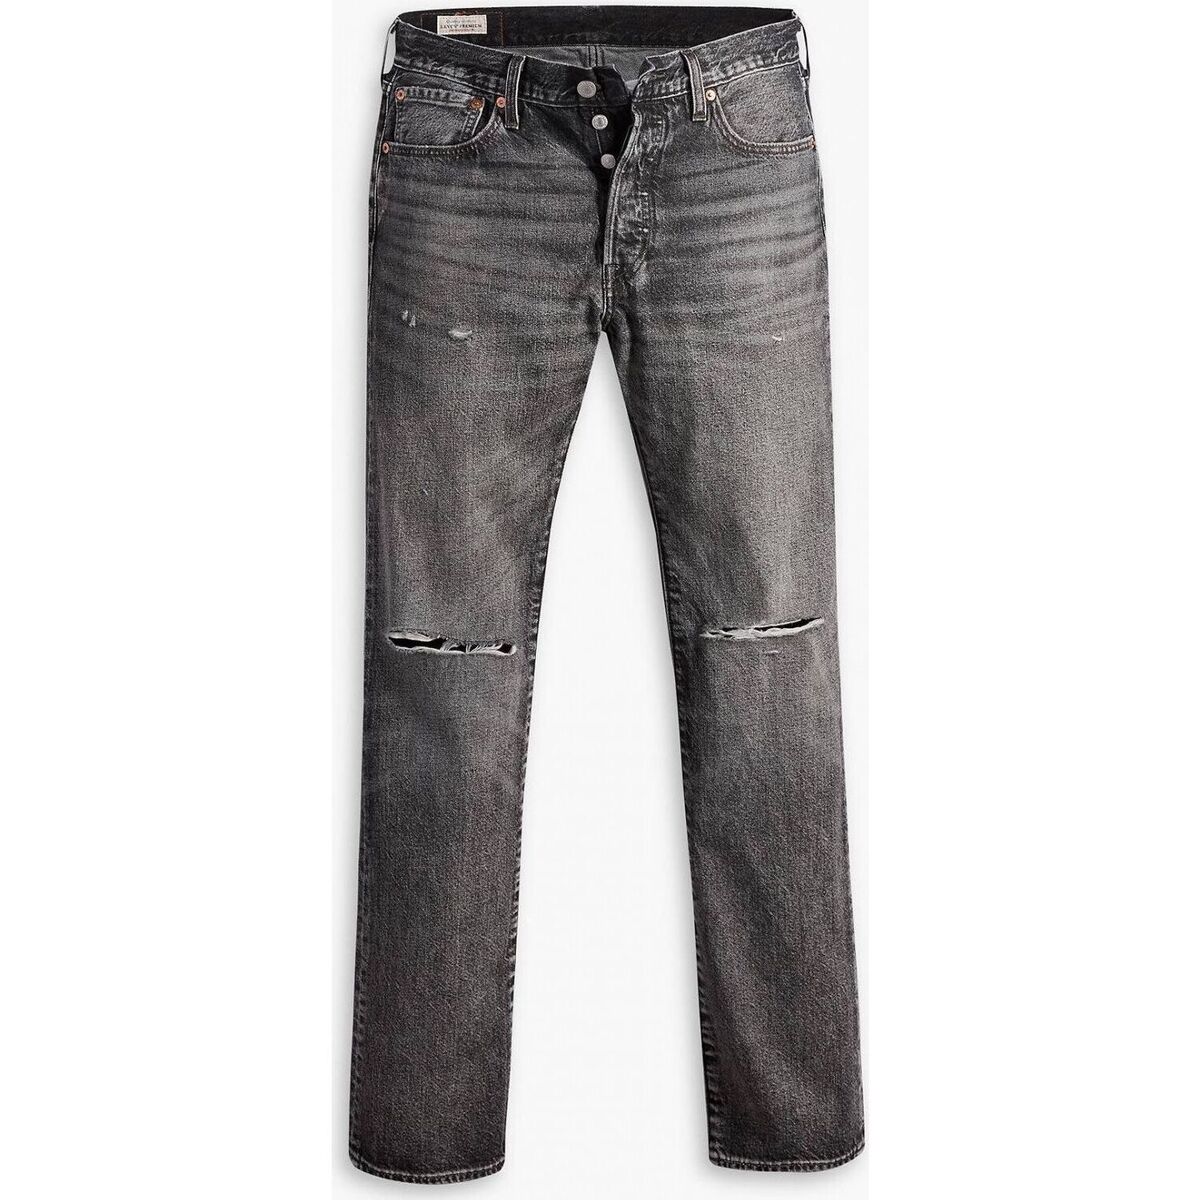 Kleidung Herren Jeans Levi's 00501 3414 - 501 ORIGINAL-BLACK SAND BEACH DX Schwarz